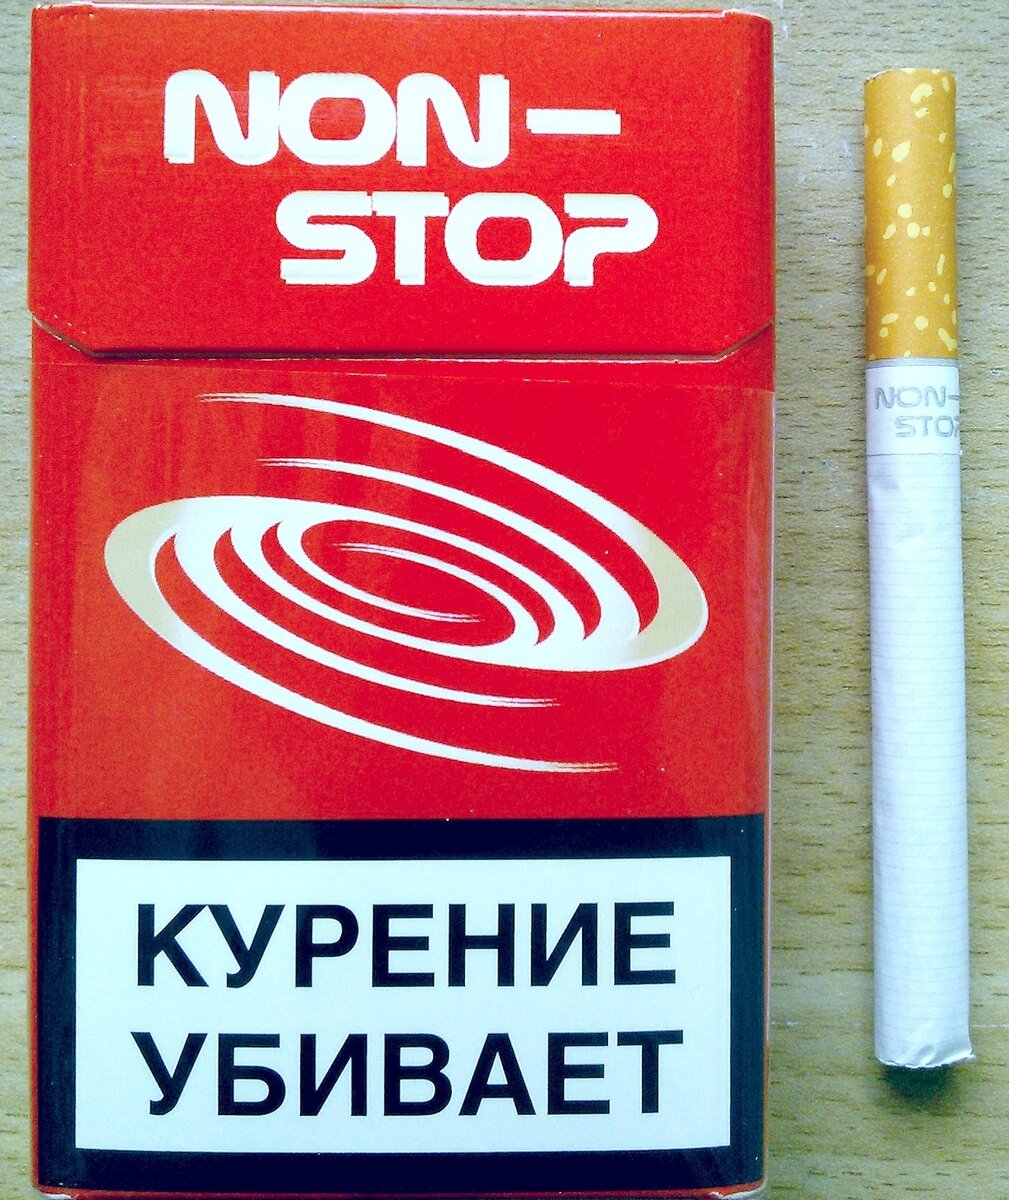 Сигареты 2222 купить. Сигареты. Крымские сигареты. Сигареты 2222. Нон стоп сигареты.